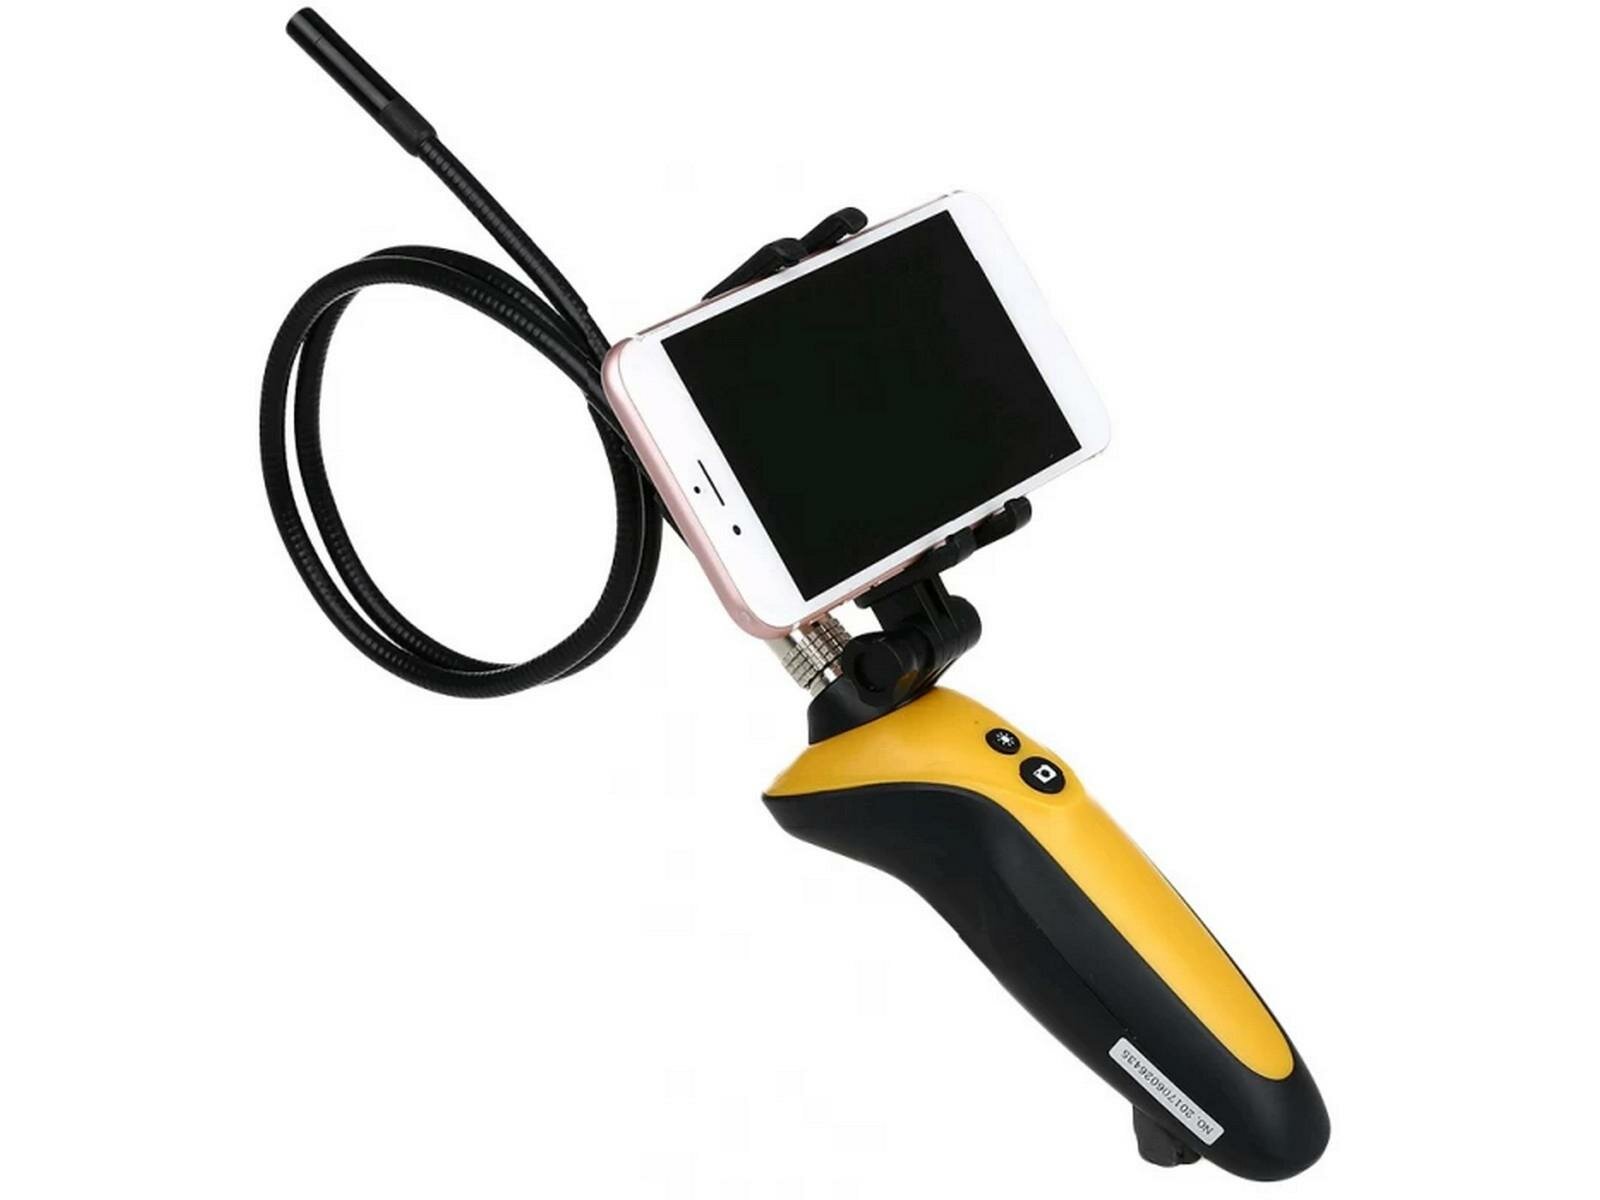 Model: HTI 669 (I30914N) эндоскоп Wi-Fi для смартфона / эндоскоп гибкая камера для телефона - видеоэндоскоп промышленный